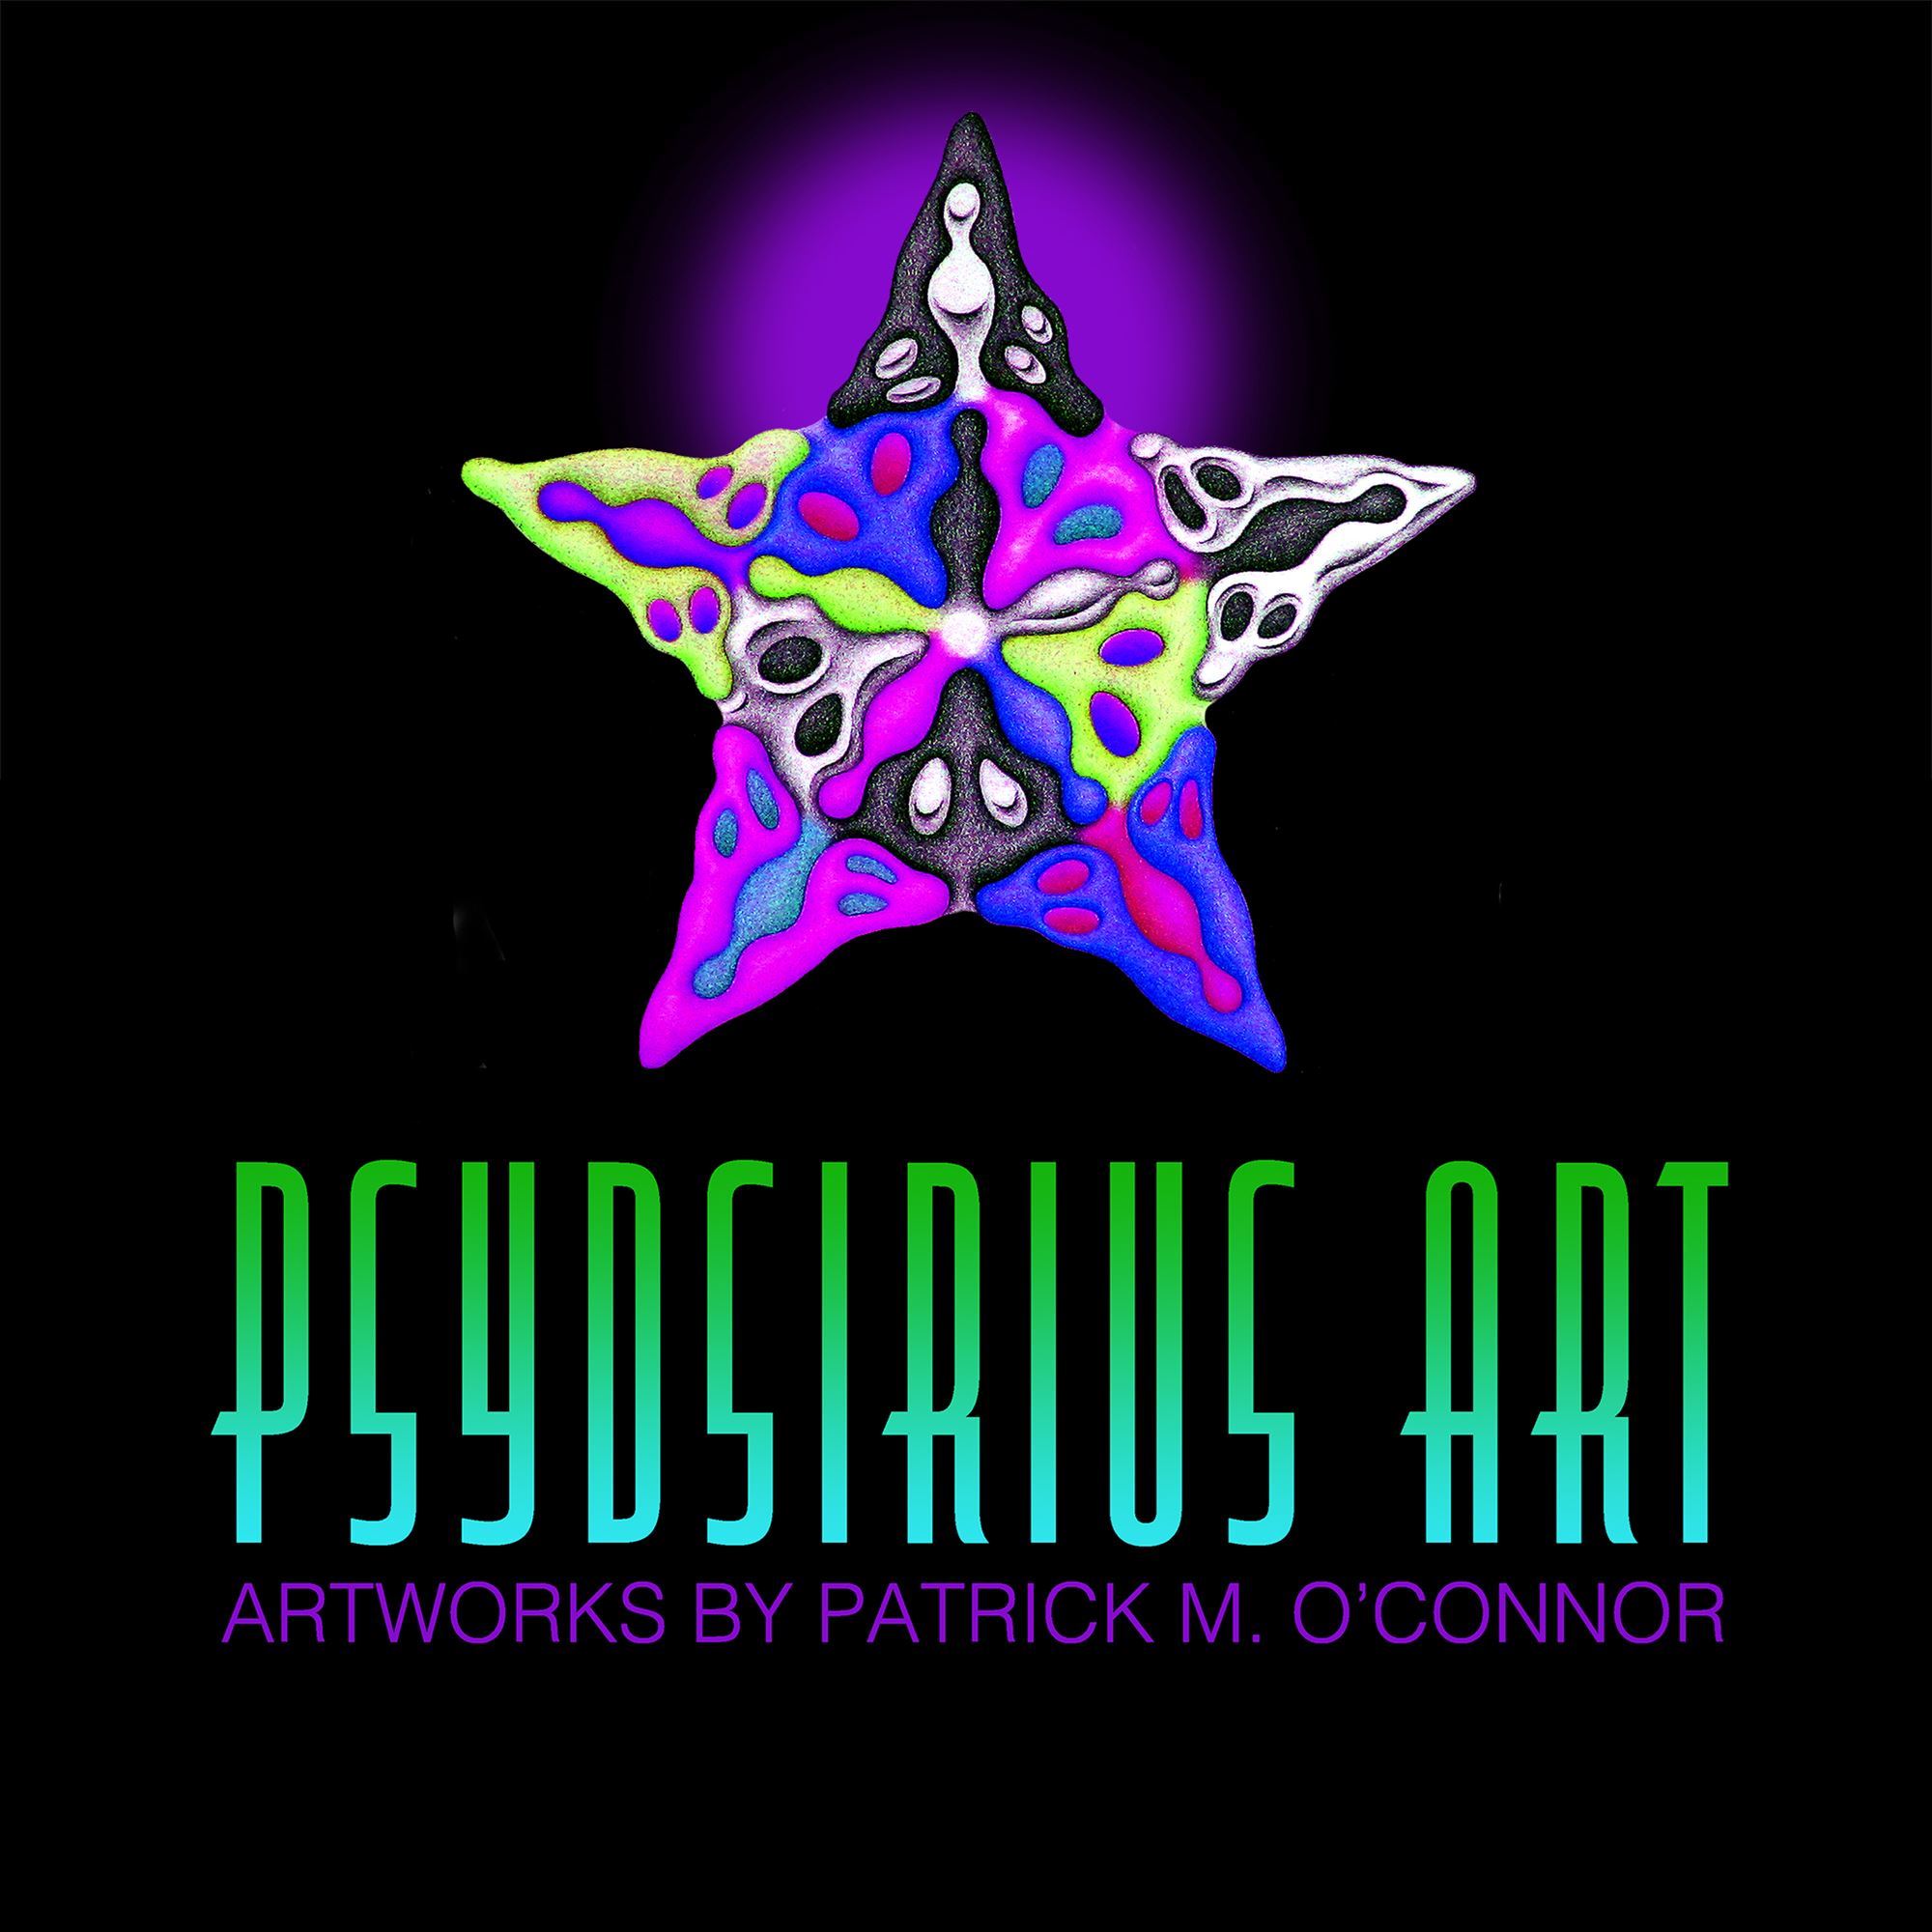 Psydsirius Art